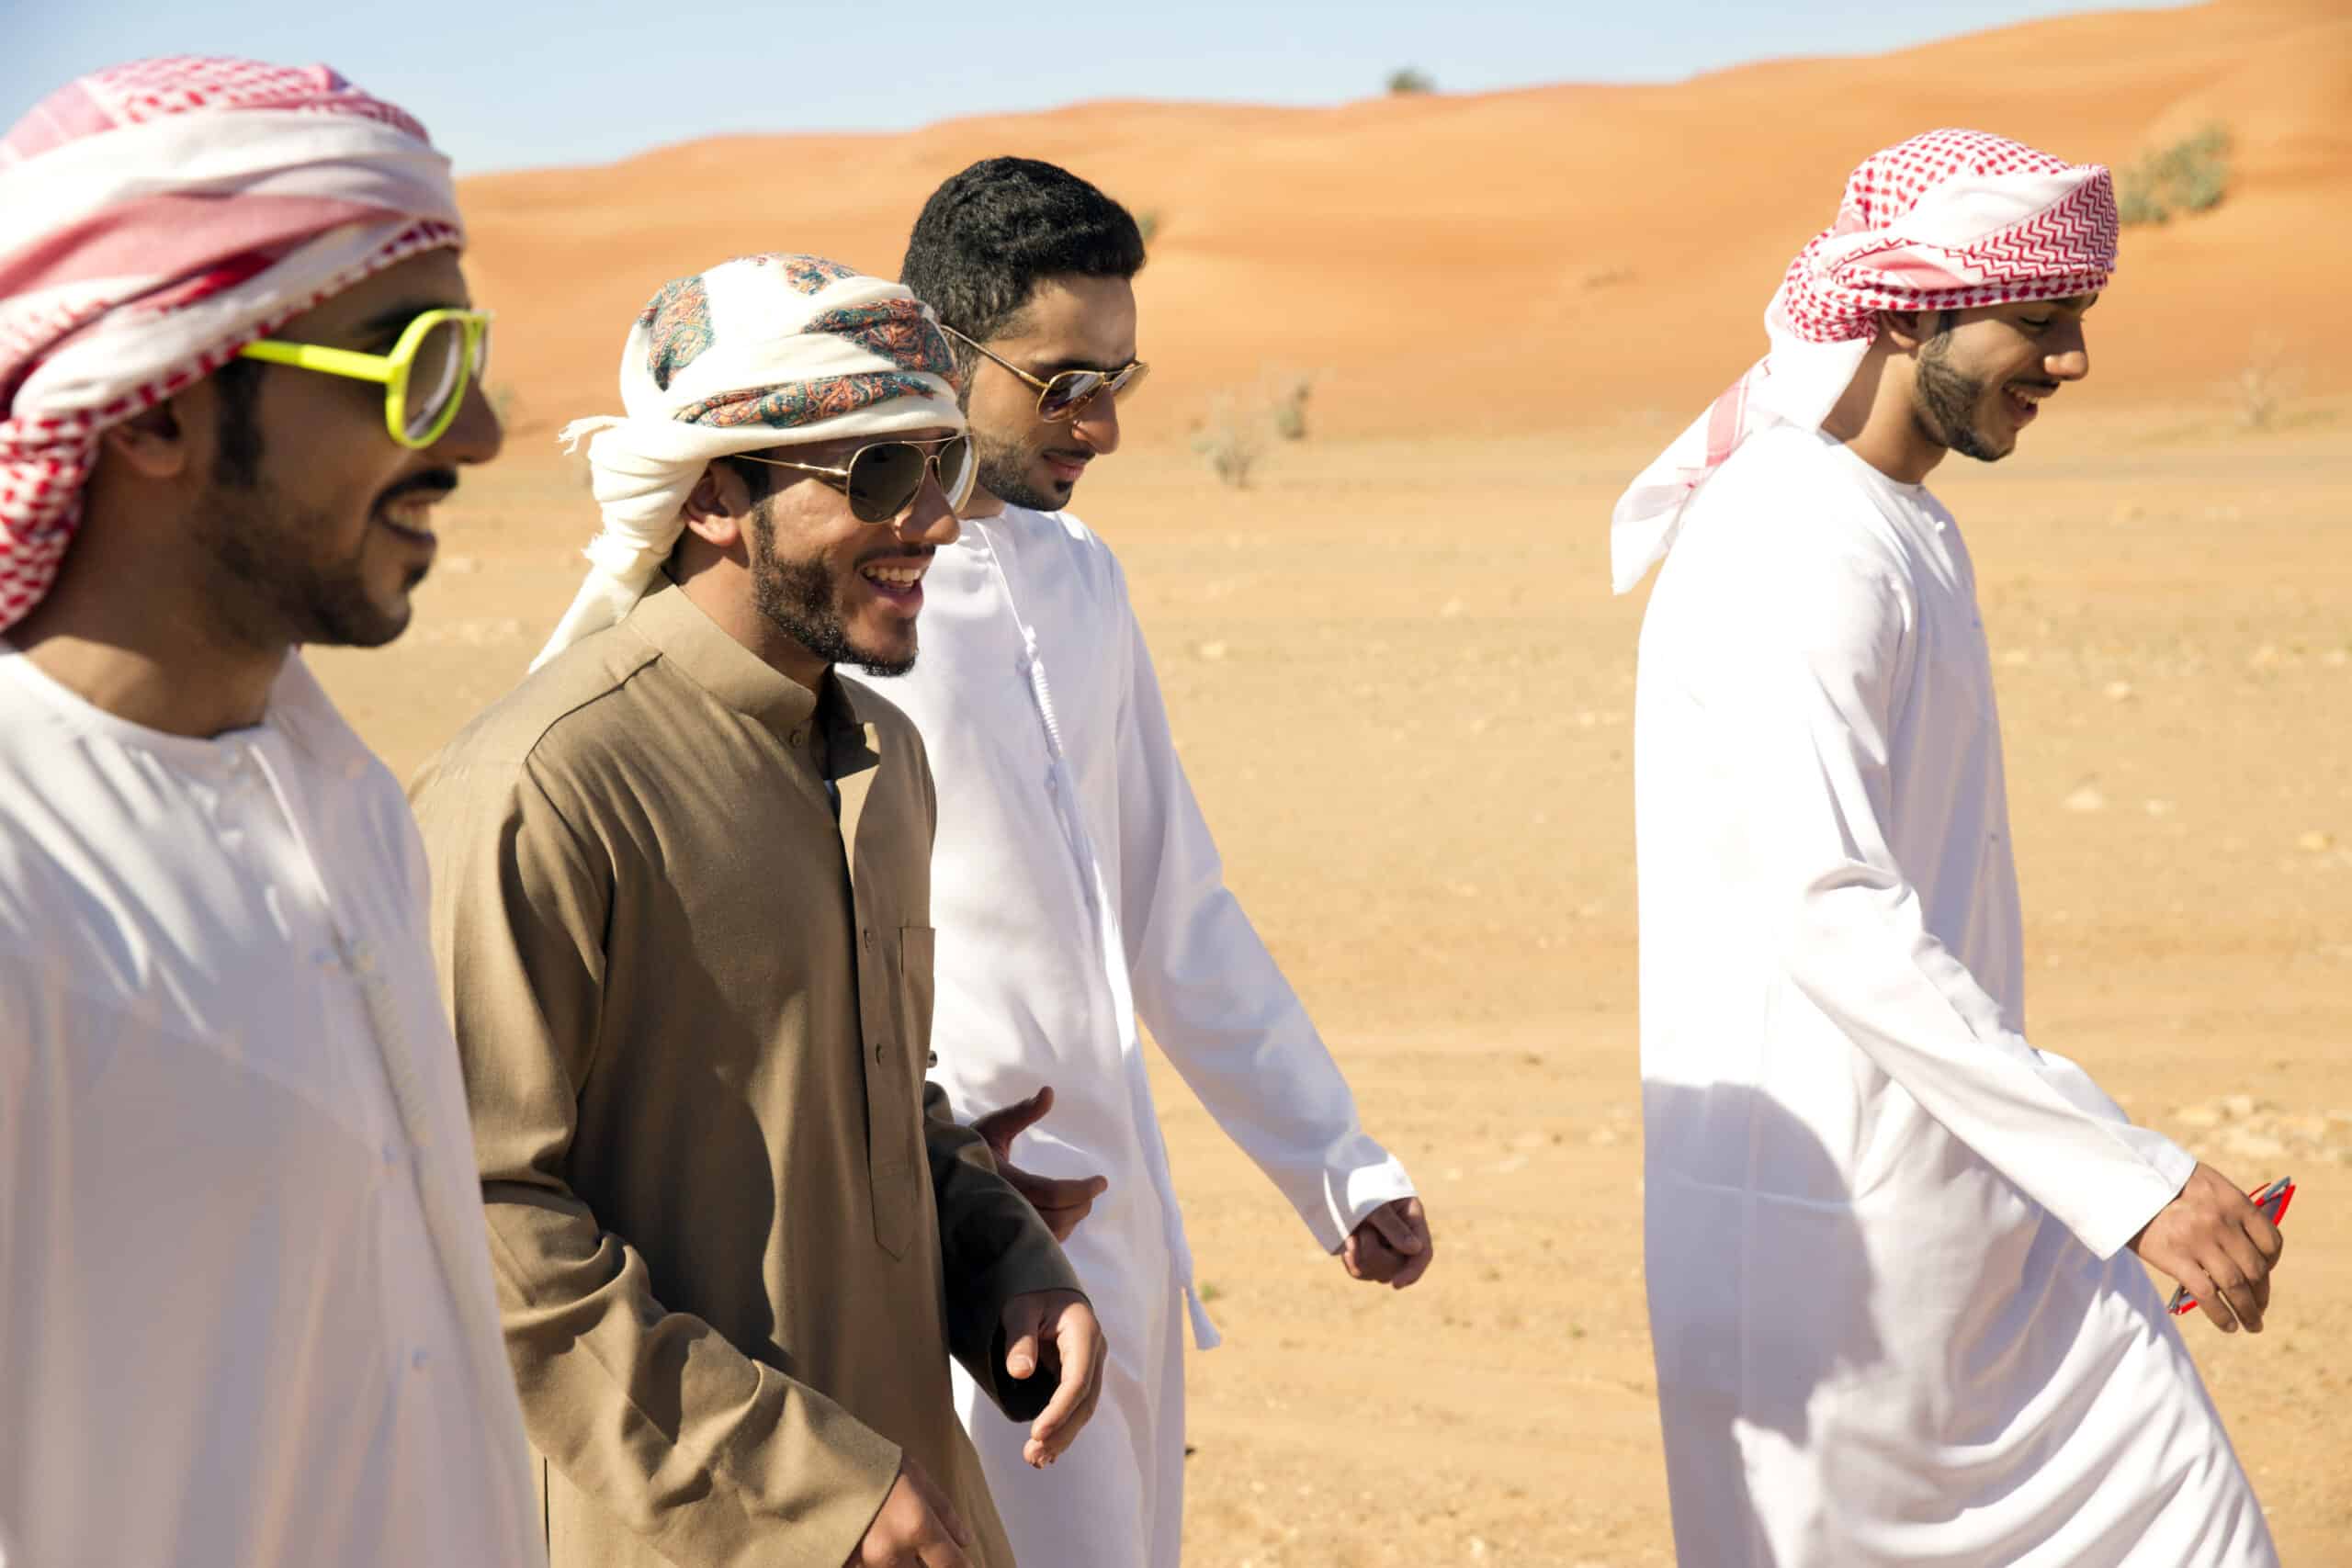 Vier arabische Männer in traditionellen weißen Gewändern und karierten Kopftüchern gehen und unterhalten sich gemeinsam in einer Wüstenlandschaft, einer davon trägt eine modische Sonnenbrille. © Fotografie Tomas Rodriguez